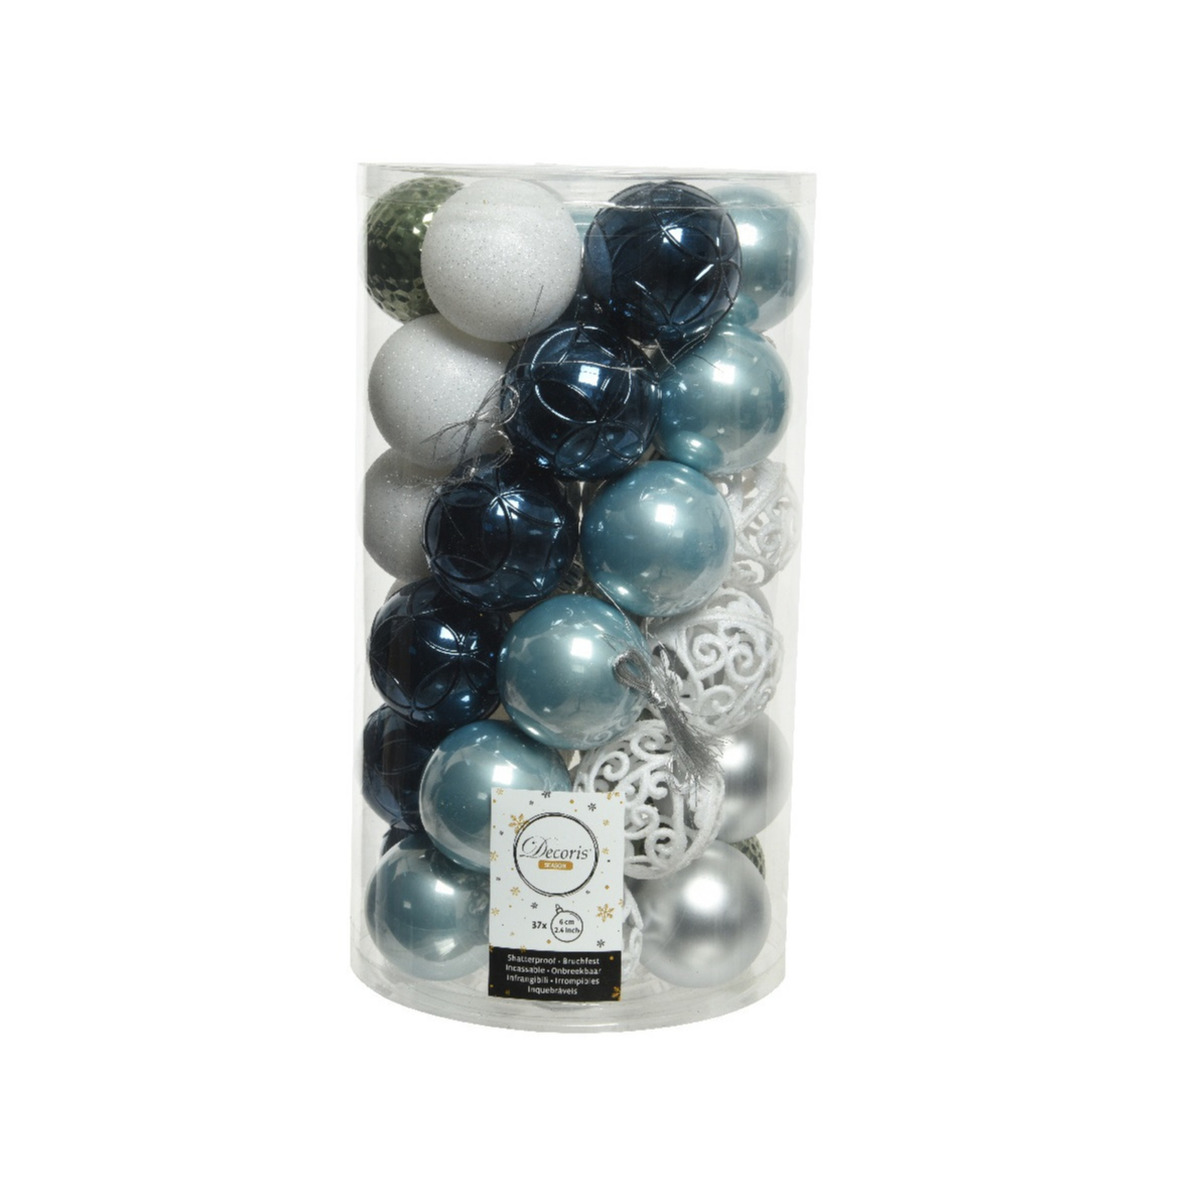 37x stuks kunststof kerstballen wit-groen-zilver-blauw mix 6 cm